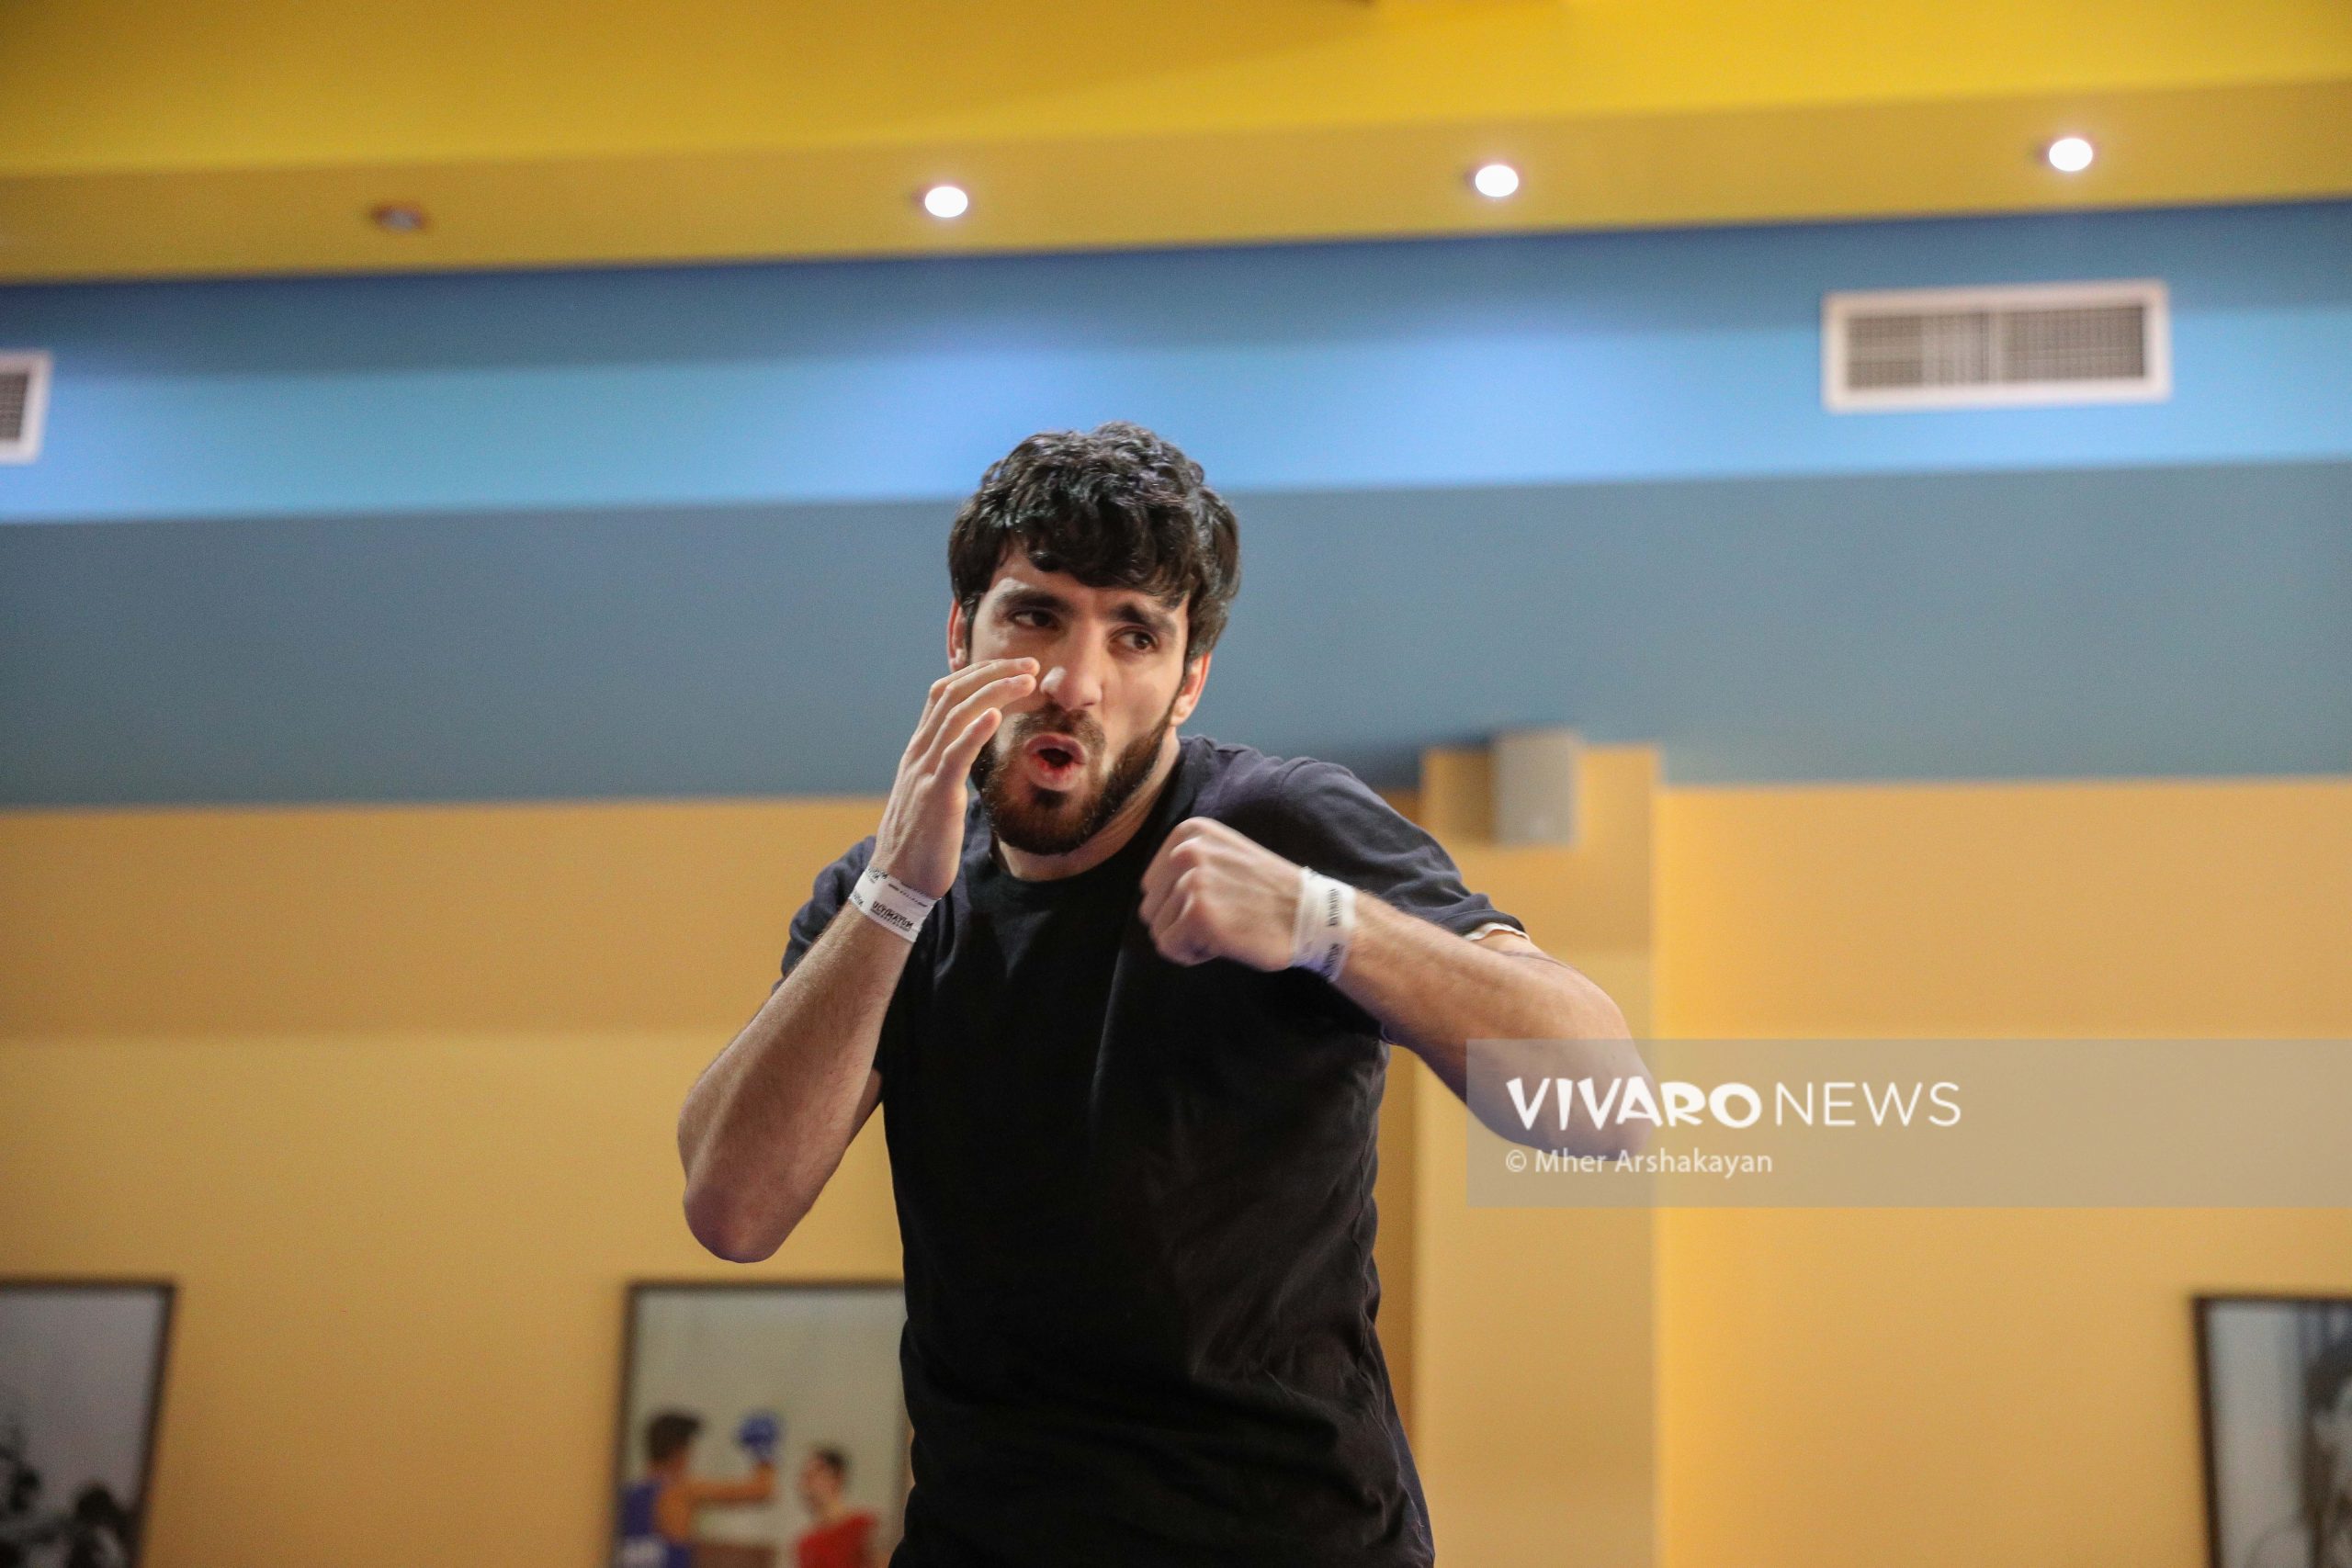 boxing training hovhannes bachkov 1 scaled - Դեպի տարվա առաջին քննություն. հայ բռնցքամարտիկների մարզումը լուսանկարներով